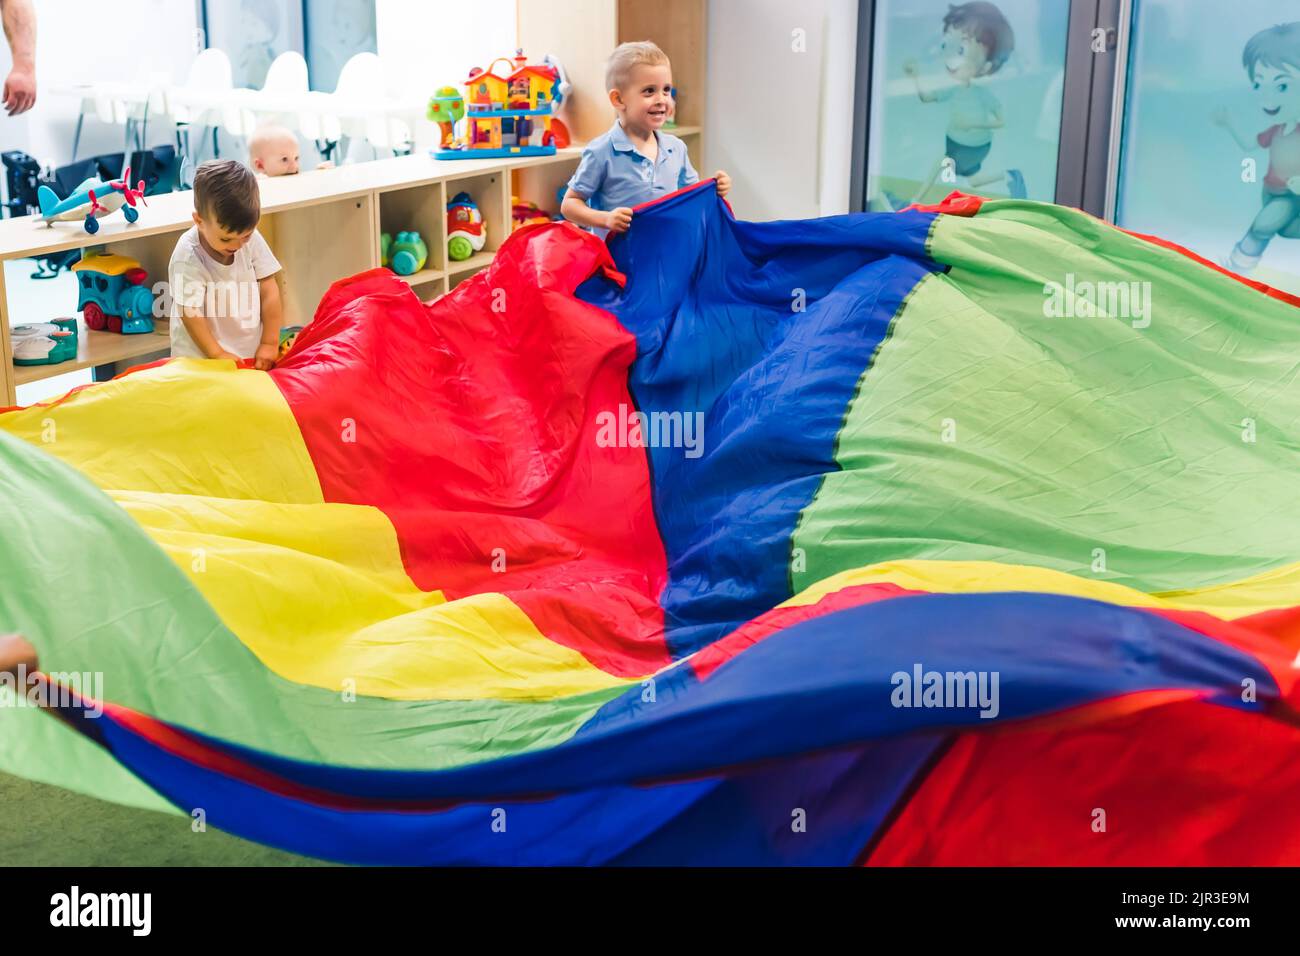 i bambini si divertono molto nella sala giochi dell'asilo. Foto di alta qualità Foto Stock